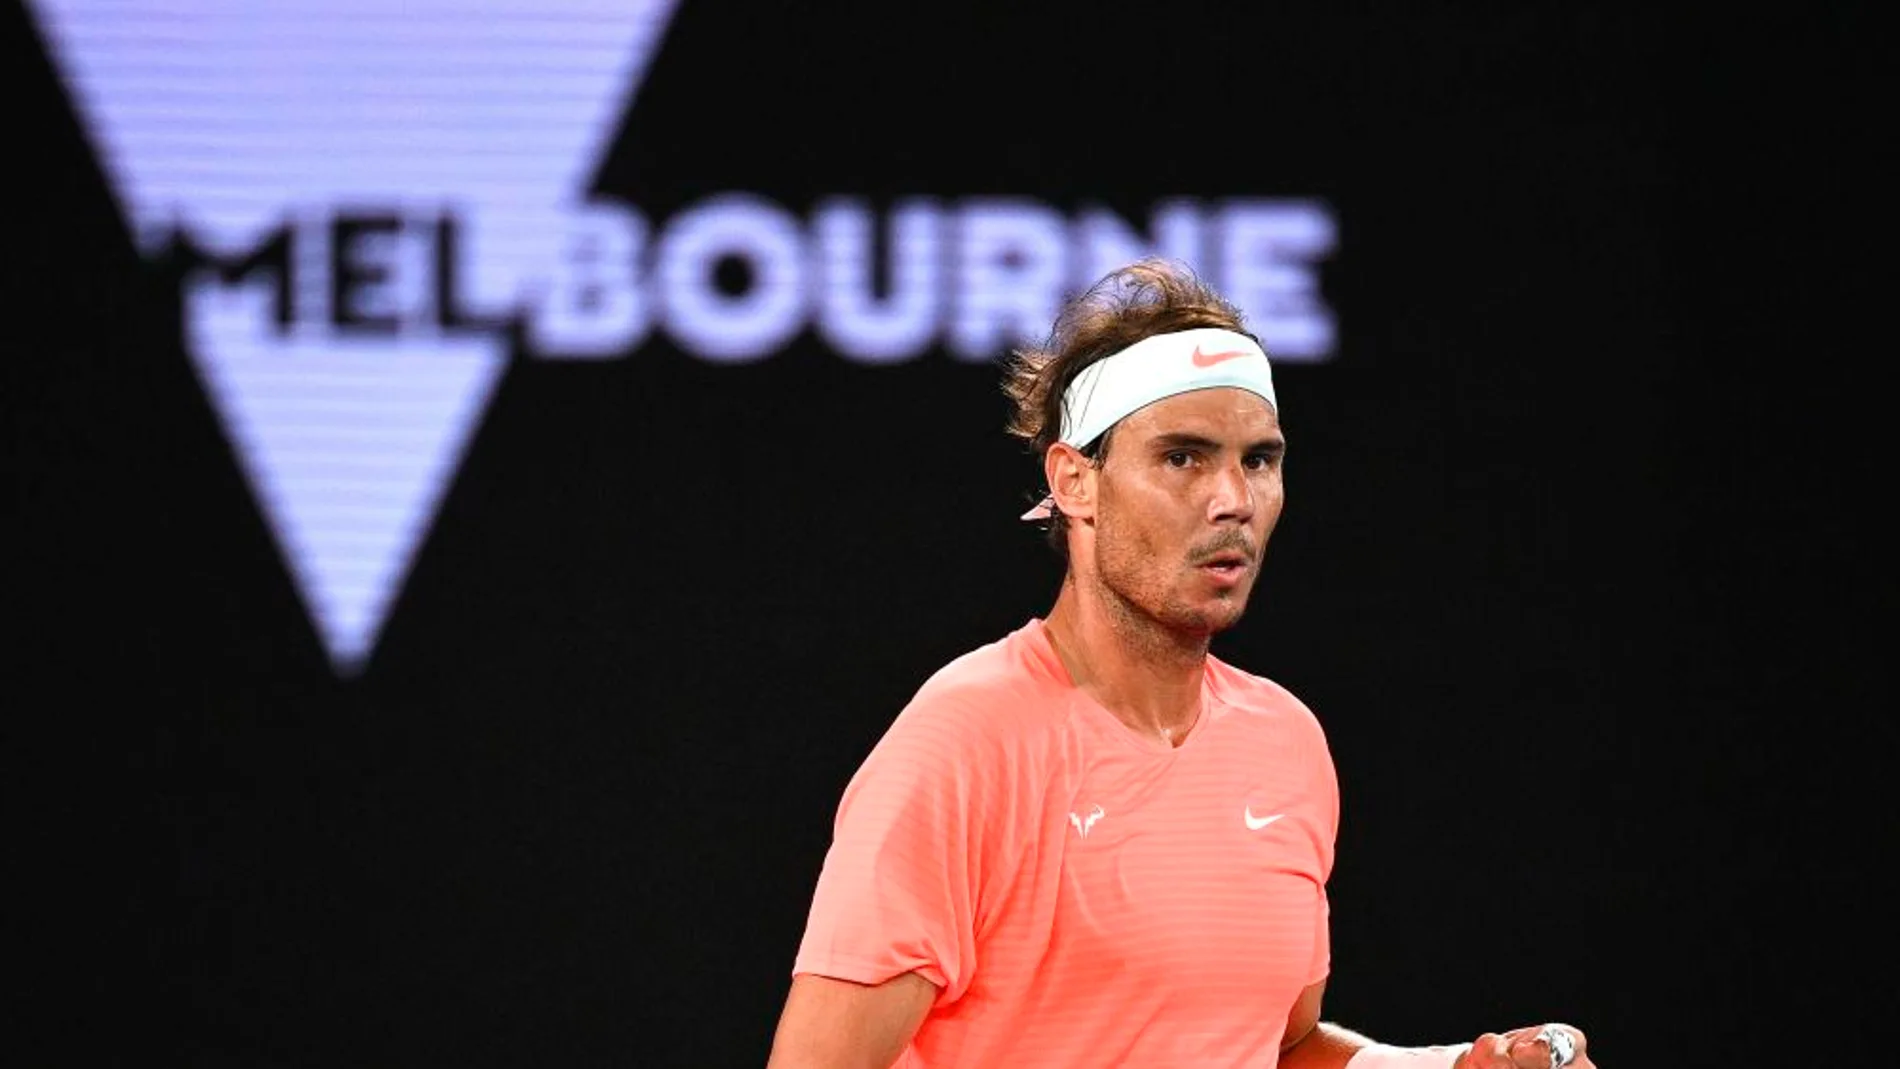 Deportes Antena 3 (13-02-21) Rafa Nadal no da opción a Norrie y se enfrentará a Fognini en octavos de final del Open de Australia